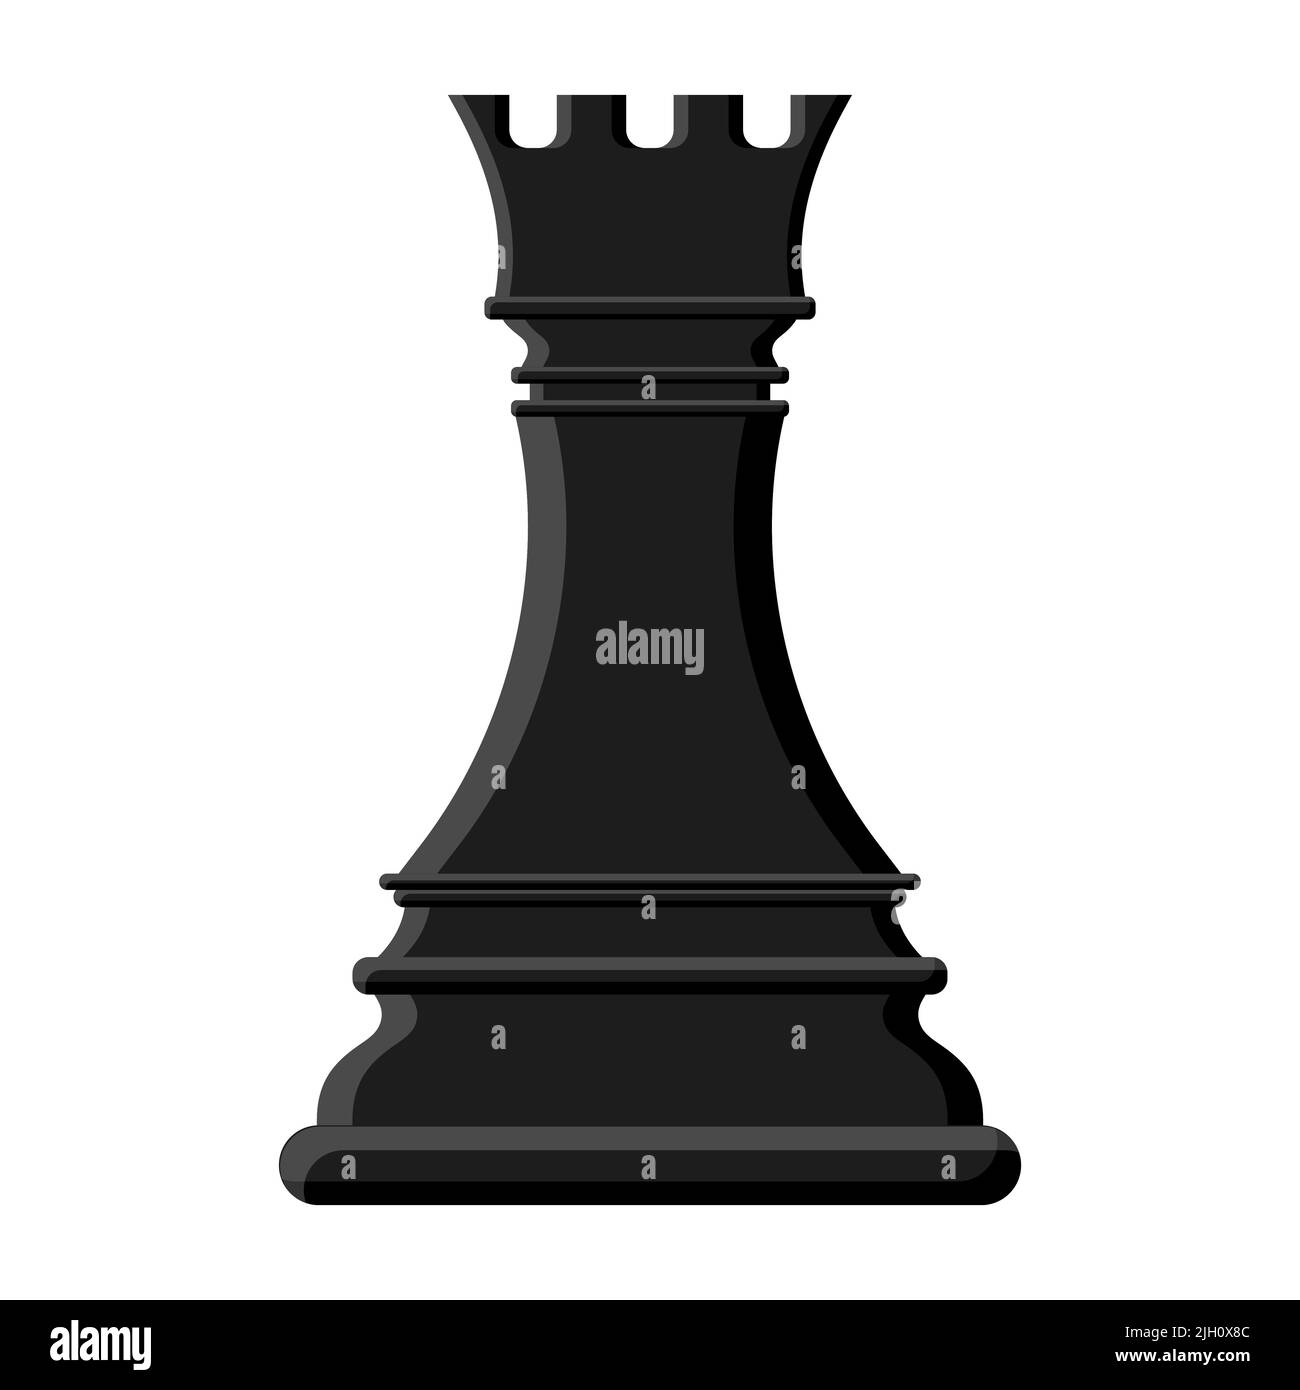 Un rook d'échecs noir de dessin animé isolé sur fond blanc. Icônes d'échecs. Illustration vectorielle pour la conception Illustration de Vecteur